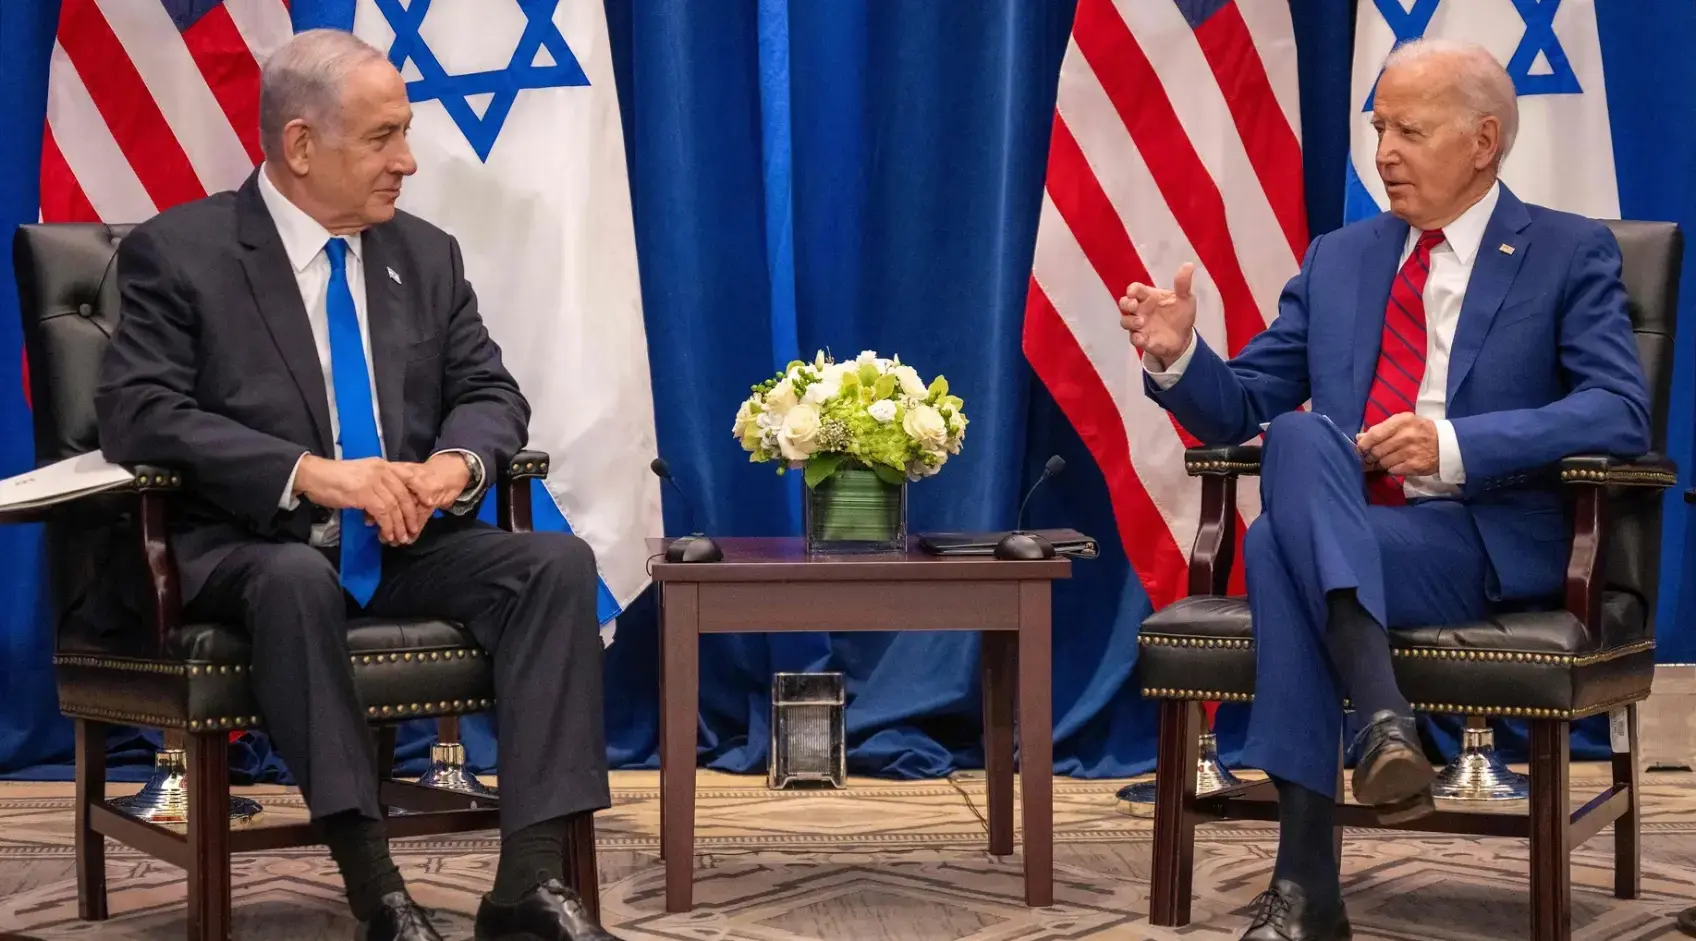 Biden estima fórmula dos estados llevaría paz en Israel y Palestina